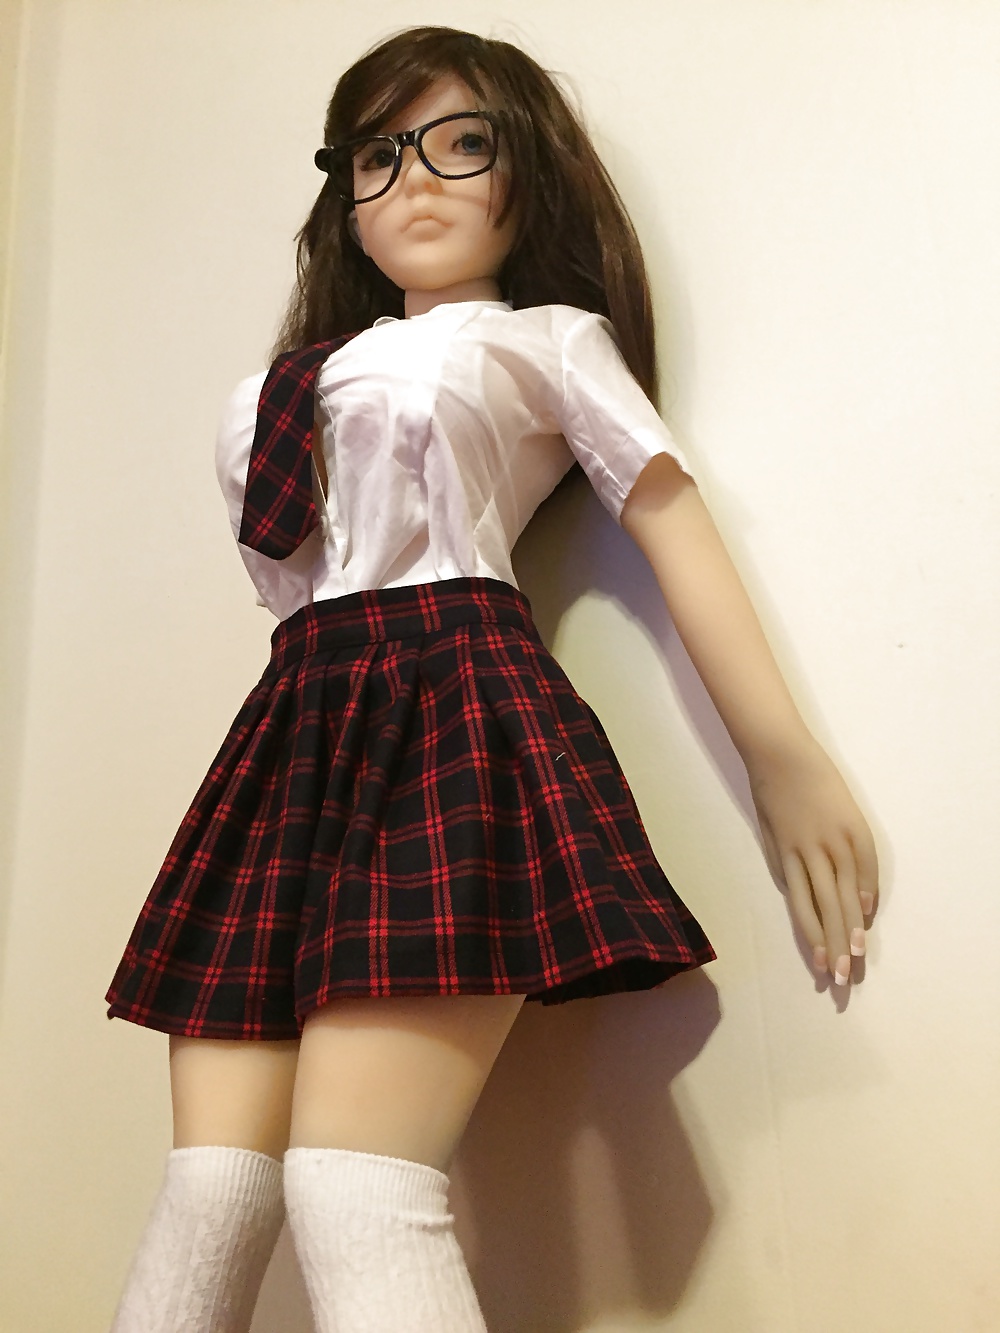 100cm sex doll Mya School Girl (1/29)